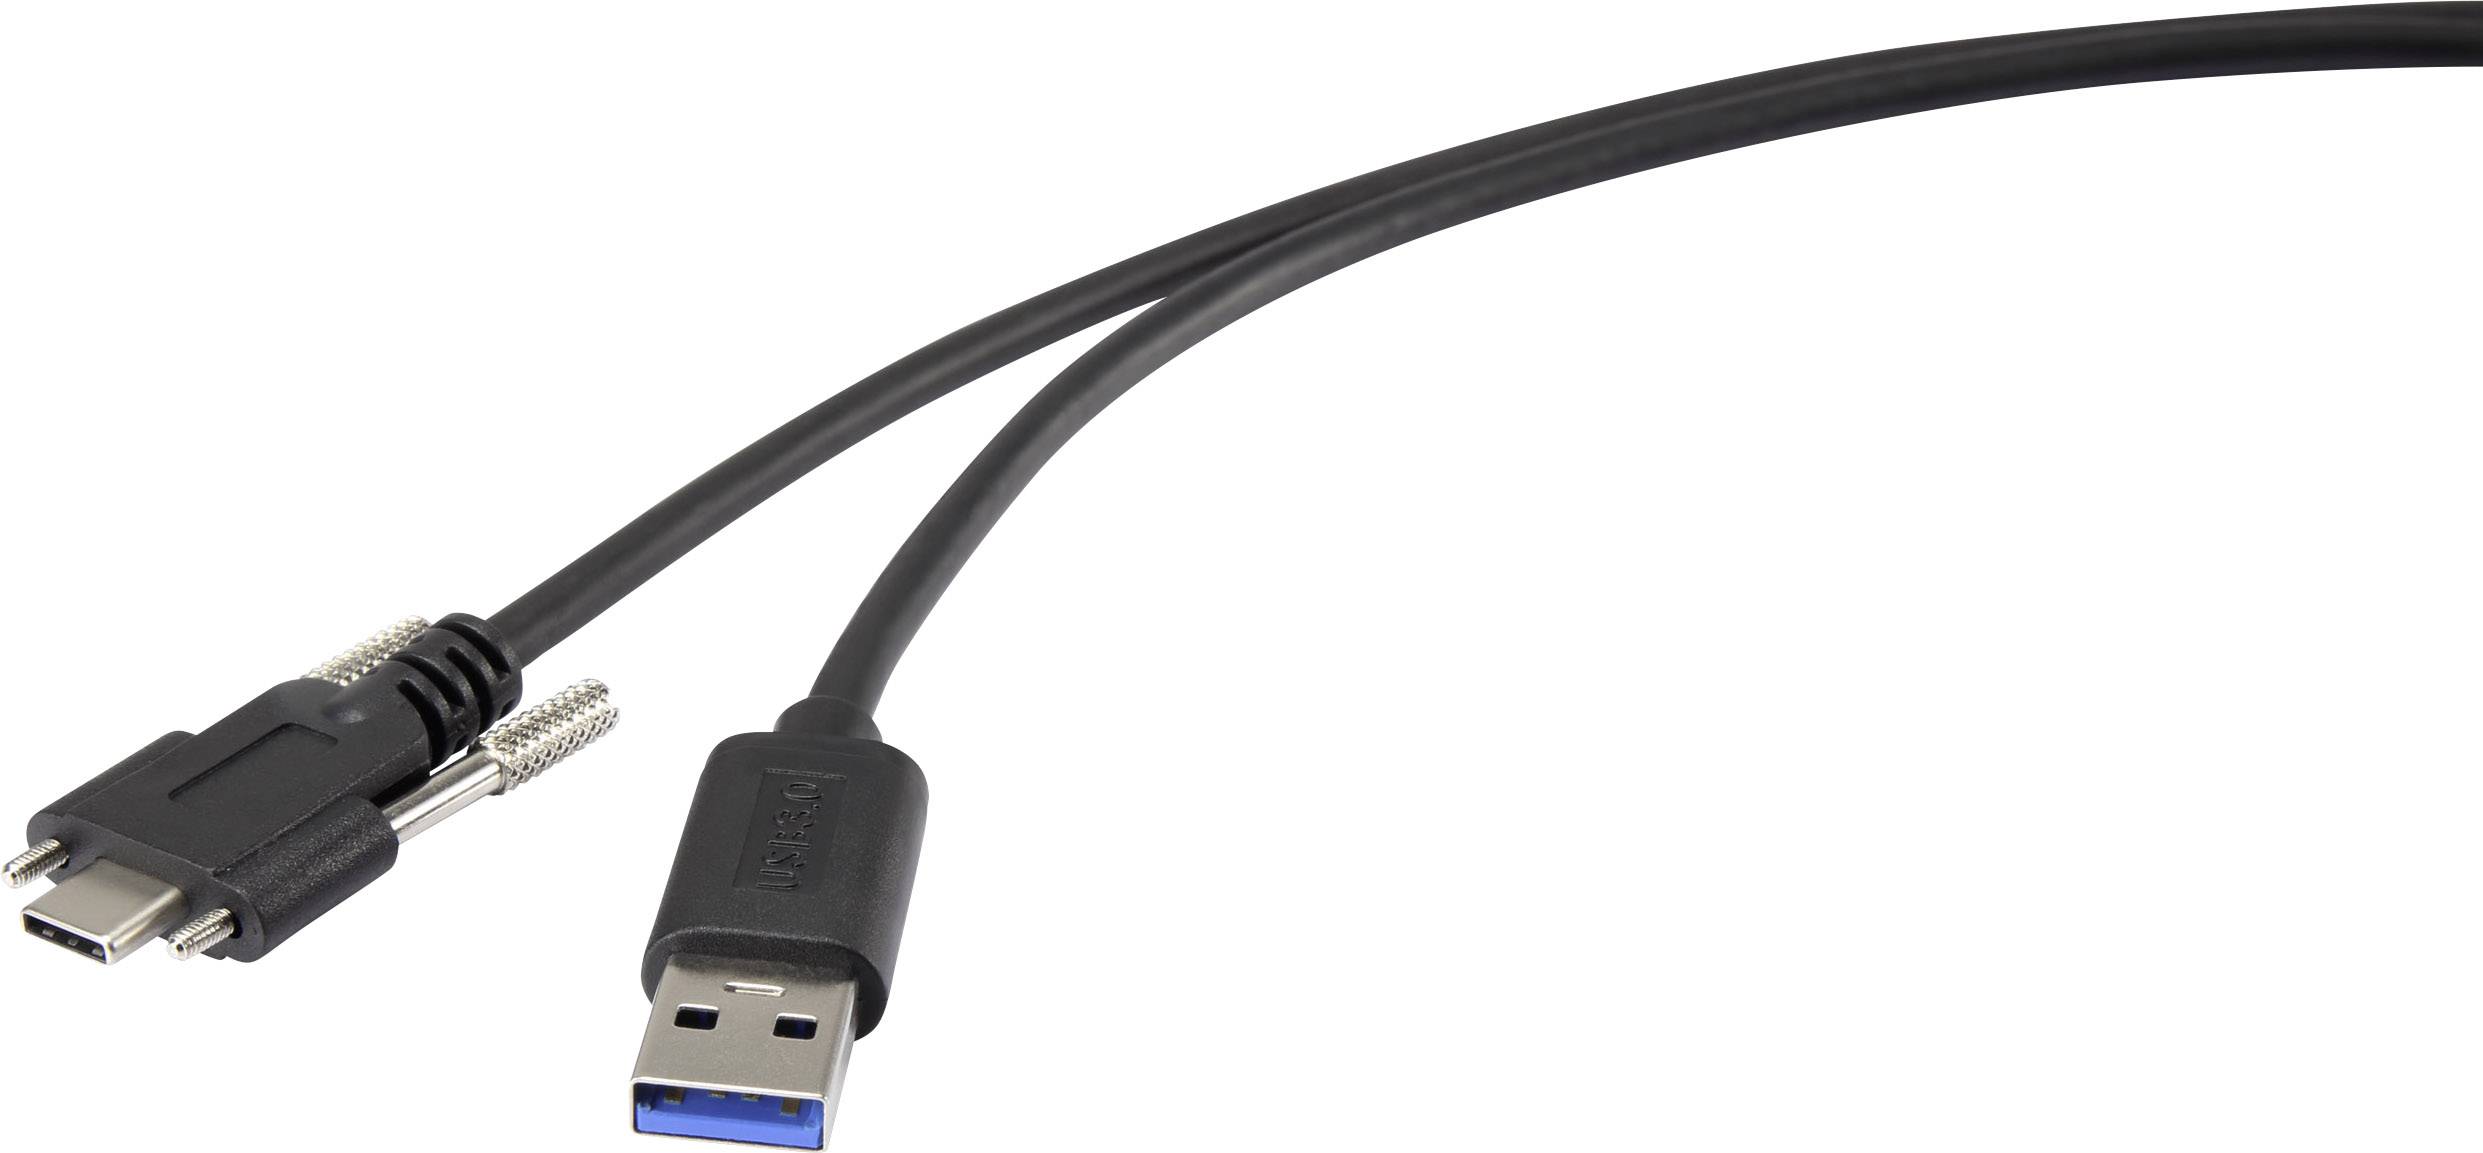 RENKFORCE USB 3.1 (Gen 1) Anschlusskabel [1x USB 3.1 Stecker A - 1x USB-C Stecker] 1 m